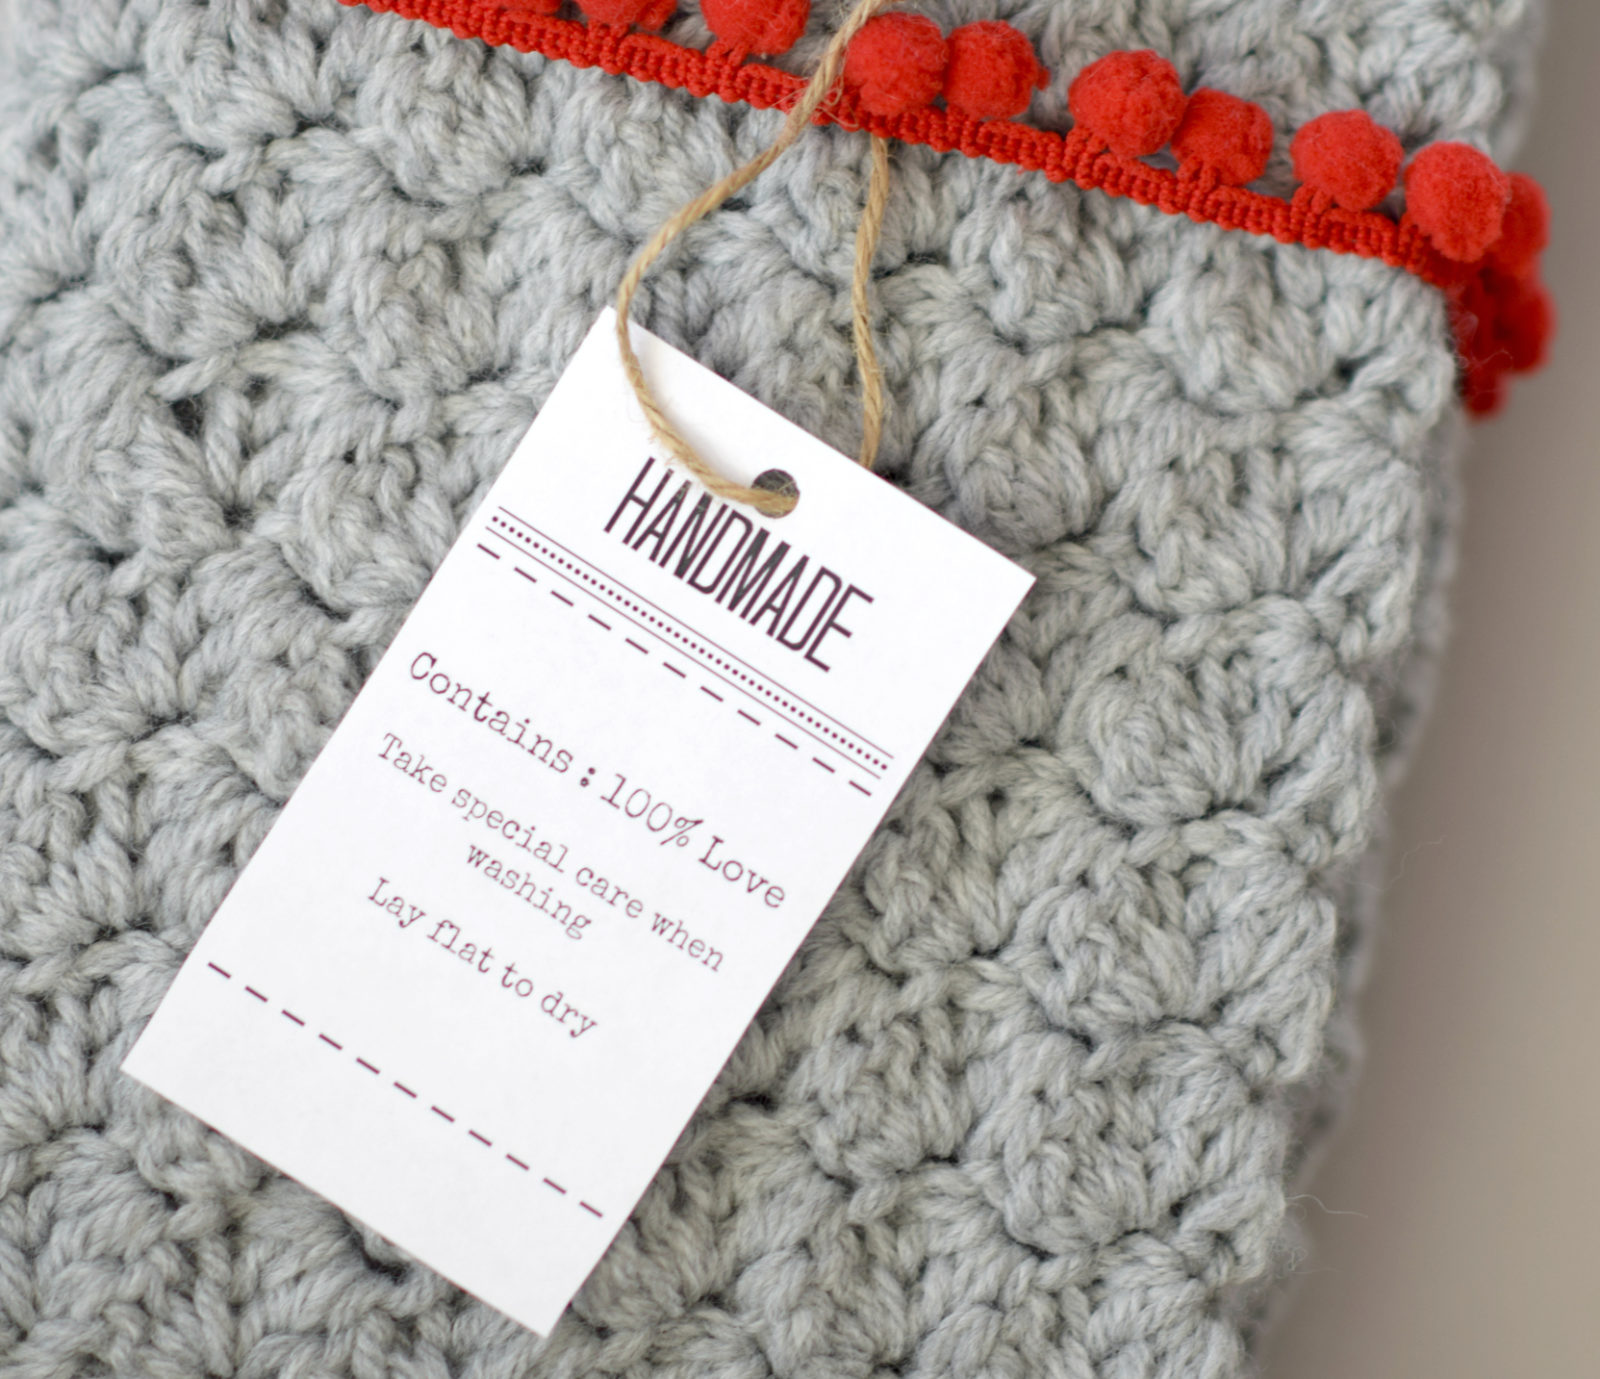 Является ли продажа ваших изделий ручной работы хобби или бизнесом? by The Yarny Bookkeeper #Crochet #TipsTuesday - Underground Crafter